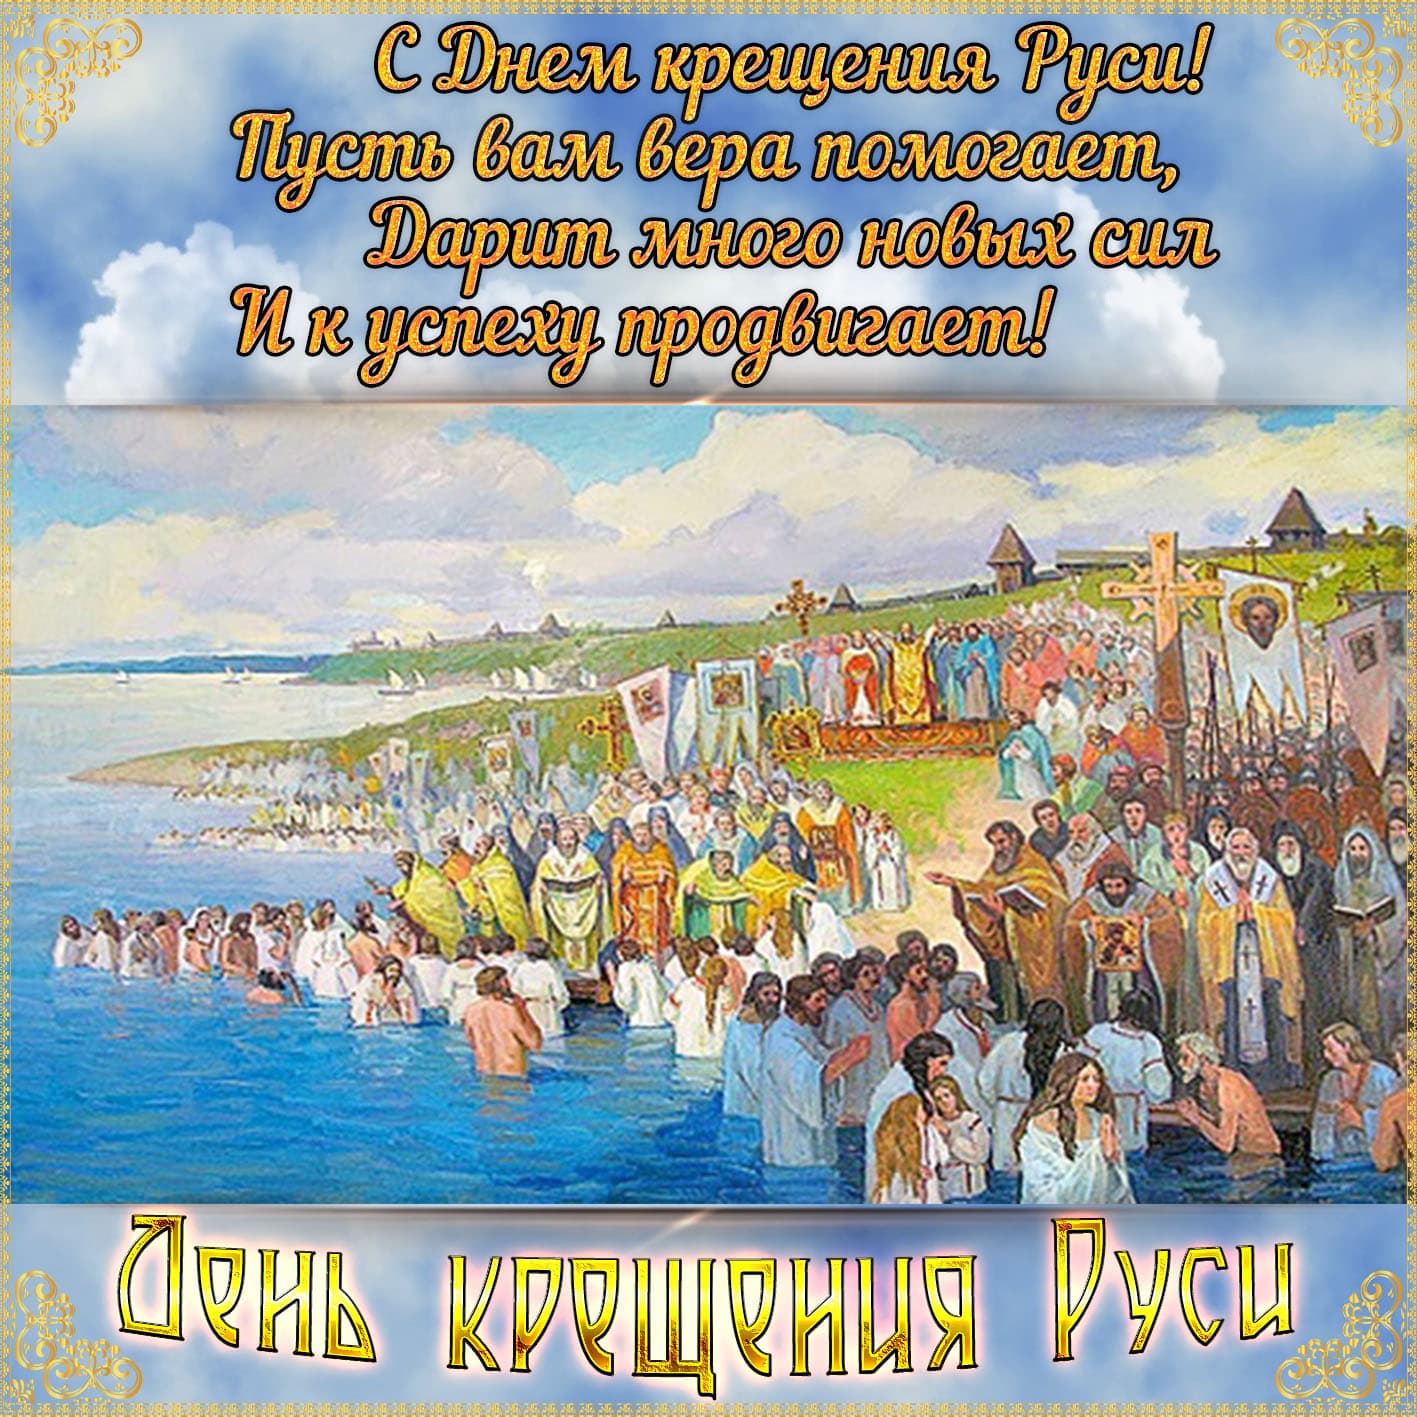 Праздник князя Владимира 28 июля